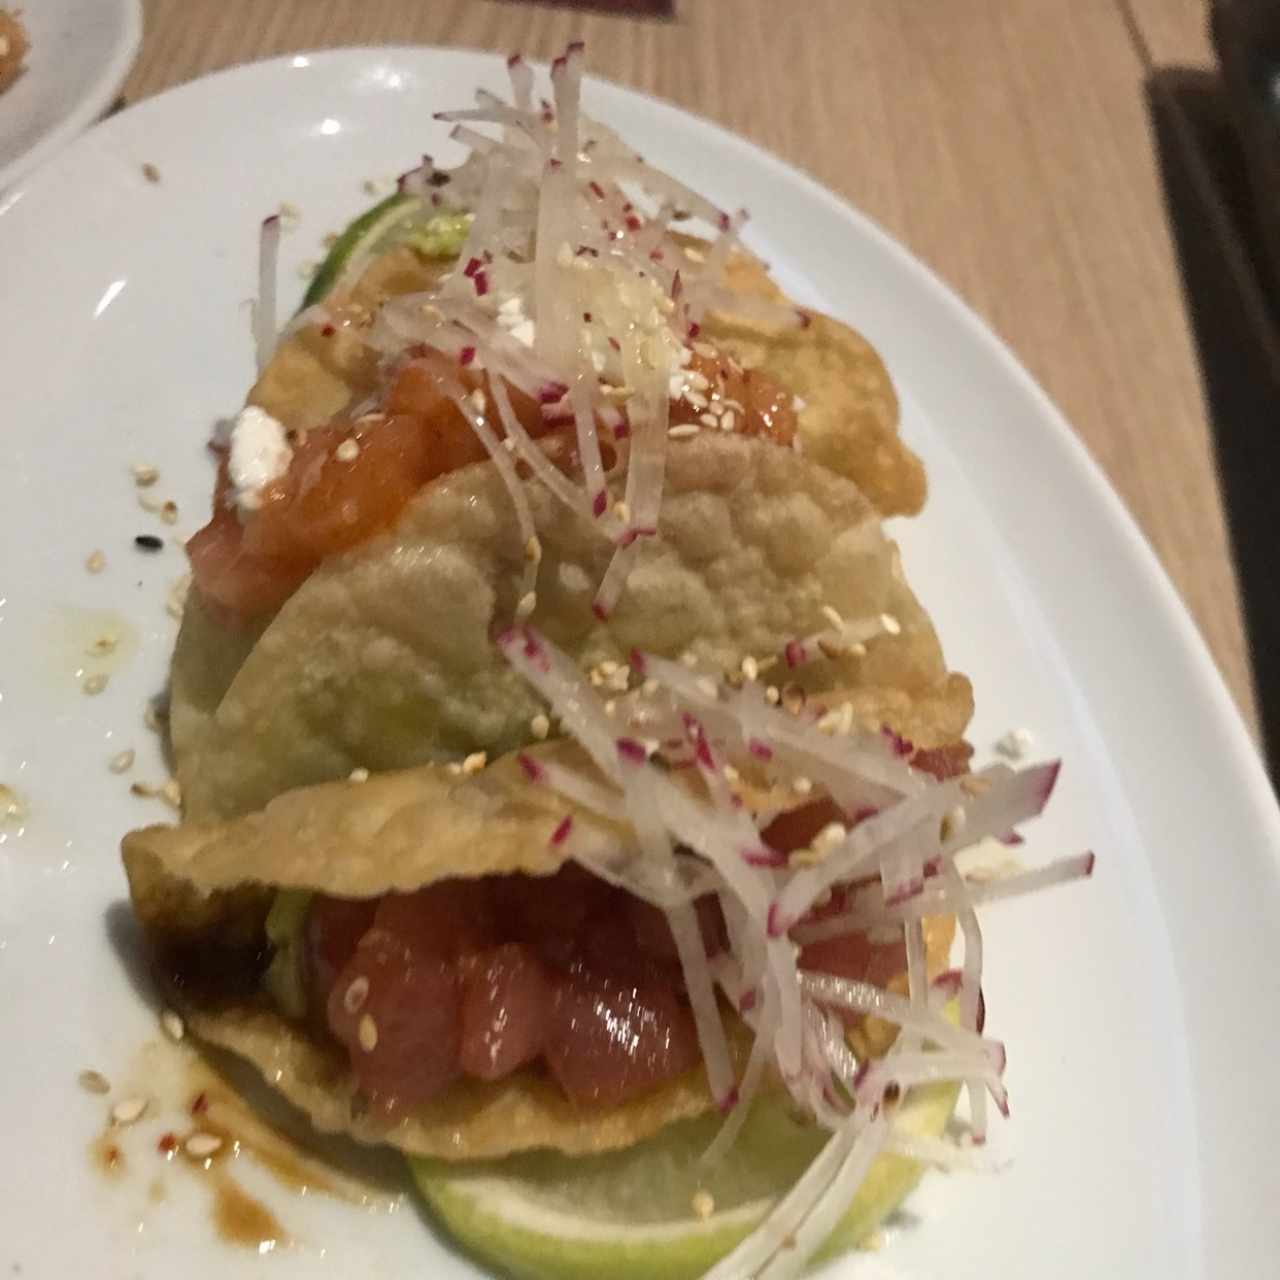 Tuna tacos